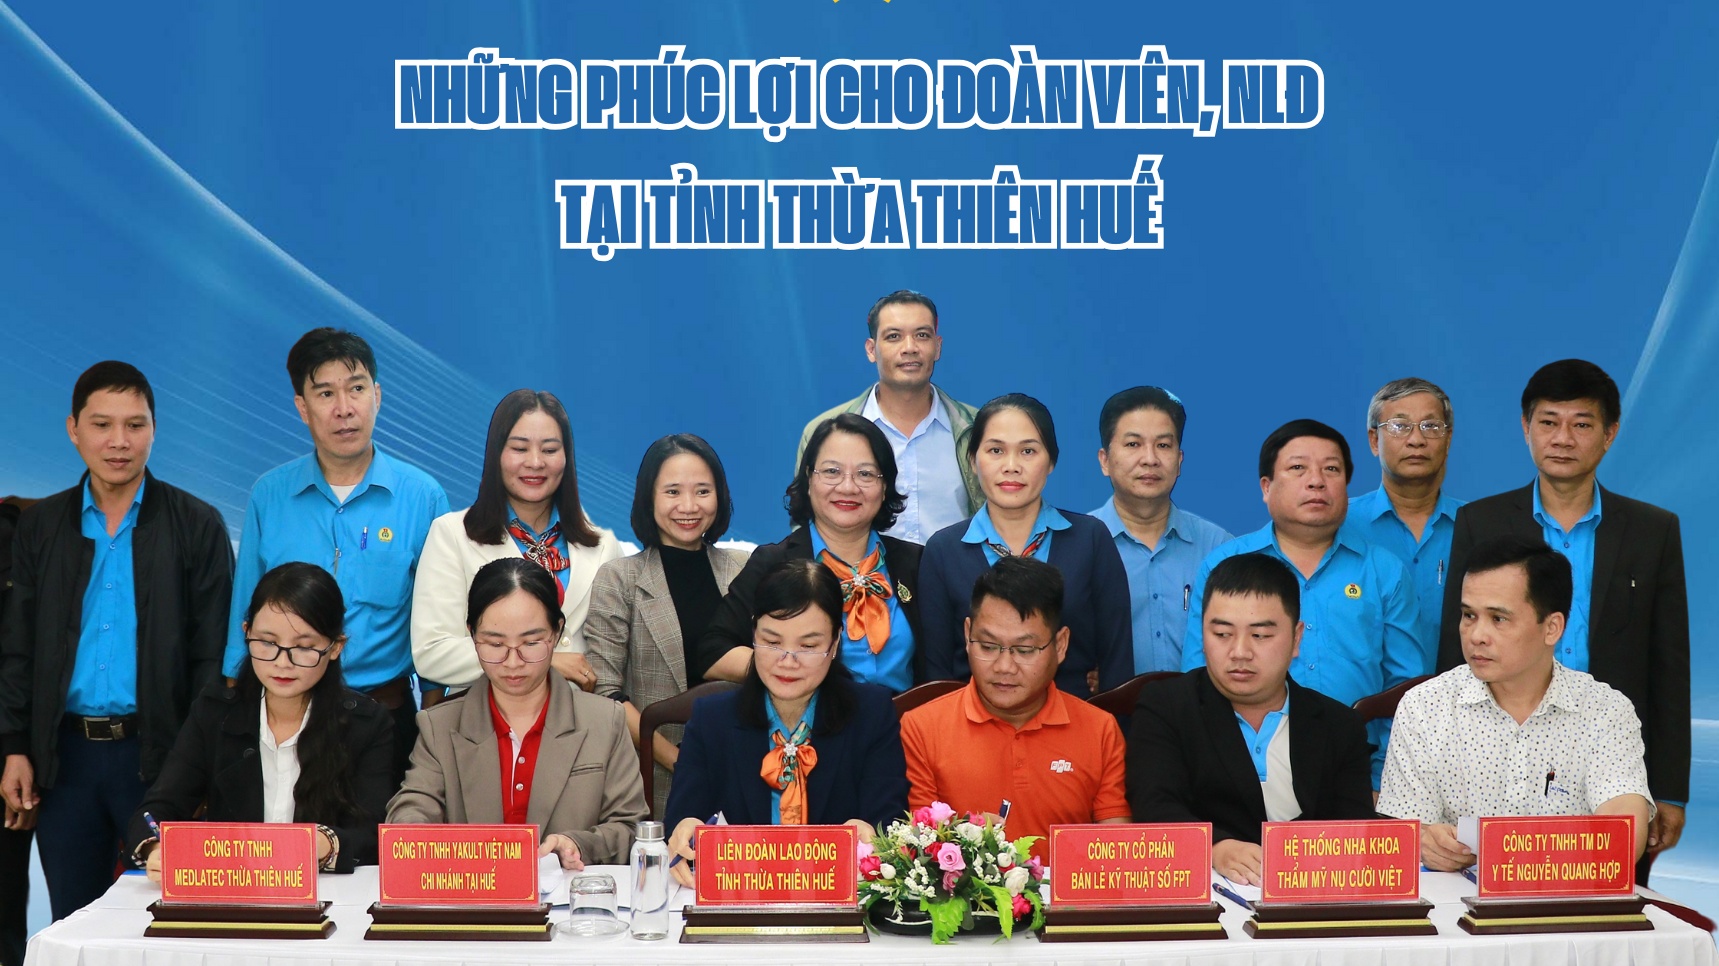 Những phúc lợi cho đoàn viên, người lao động tại tỉnh Thừa Thiên Huế